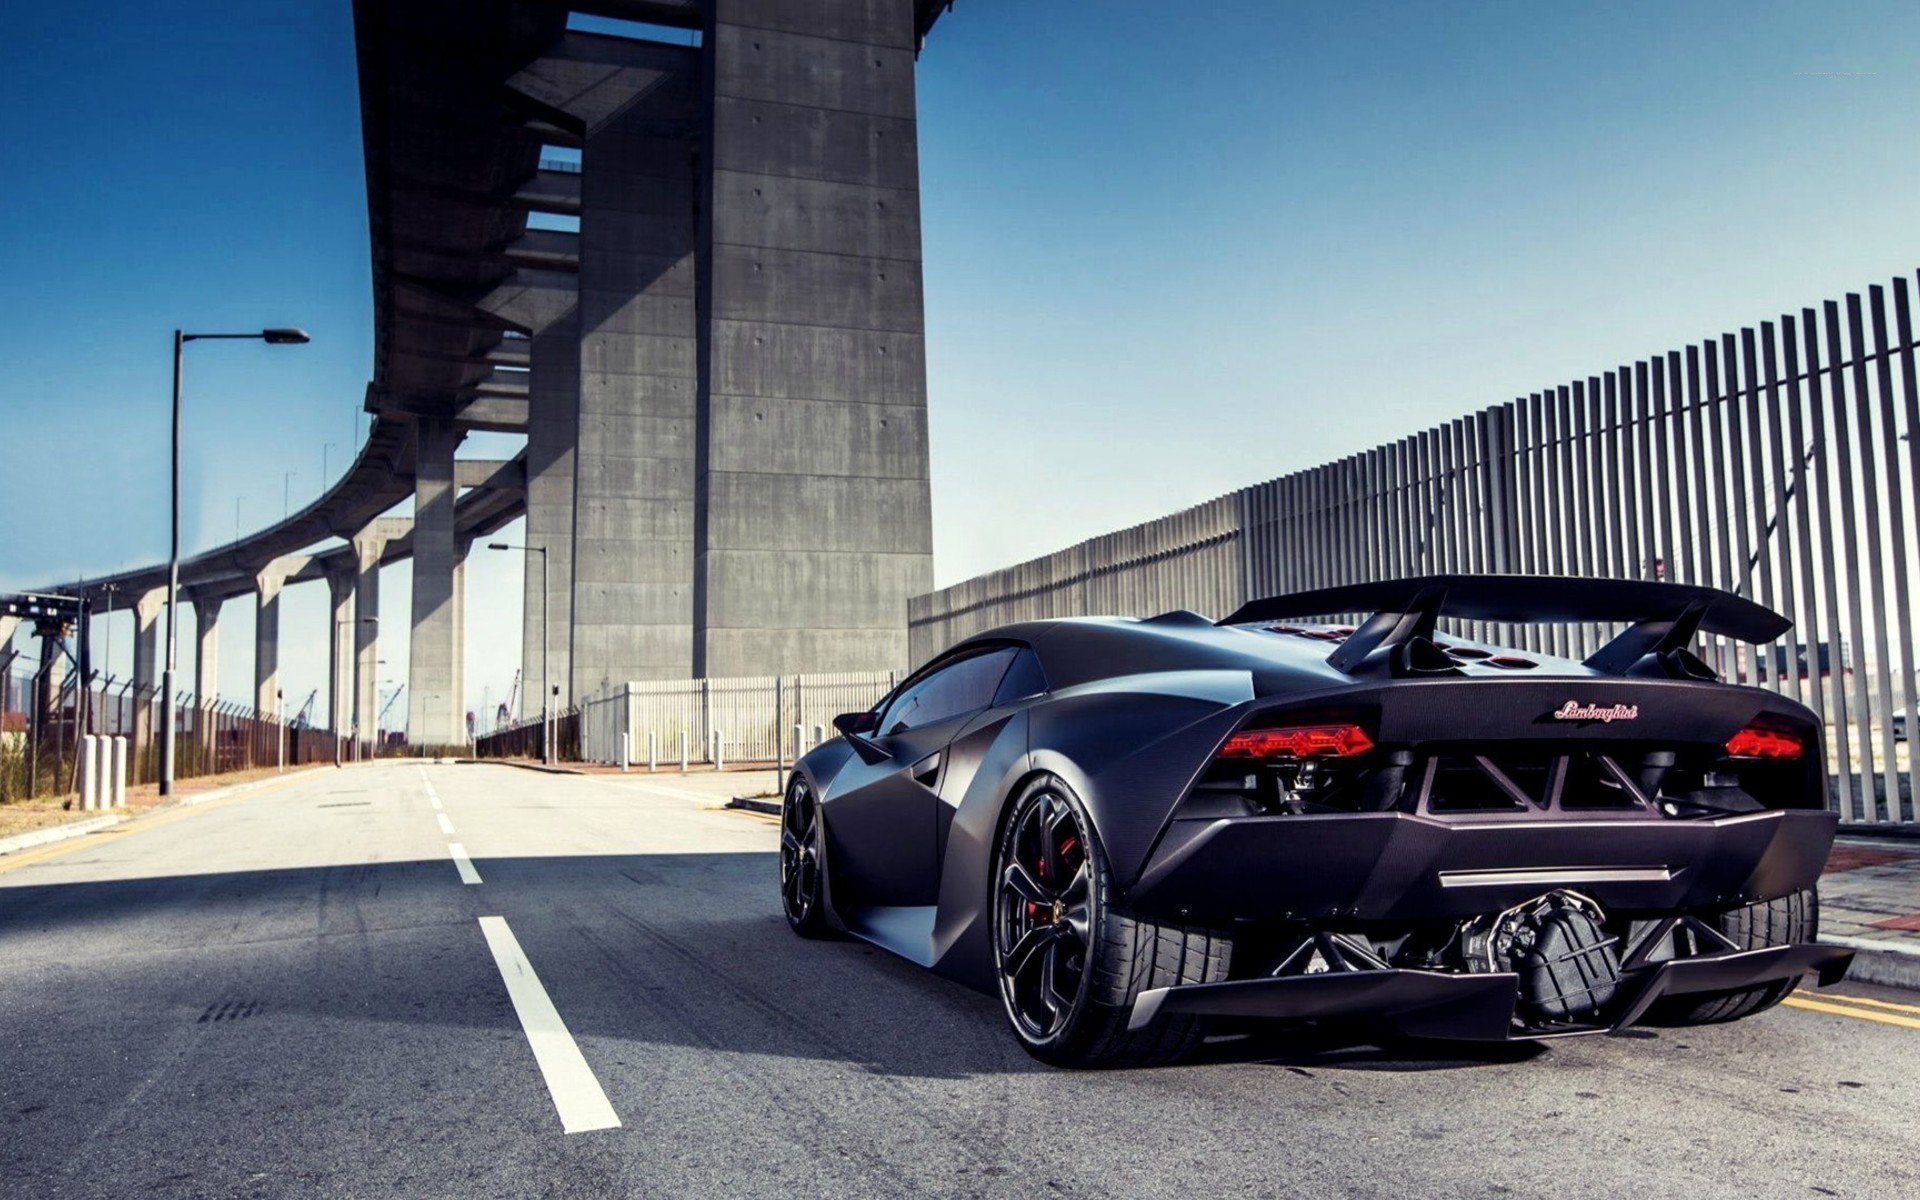 Lamborghini Sesto Elemento, HD Cars, 4k Wallpapers, Images ...